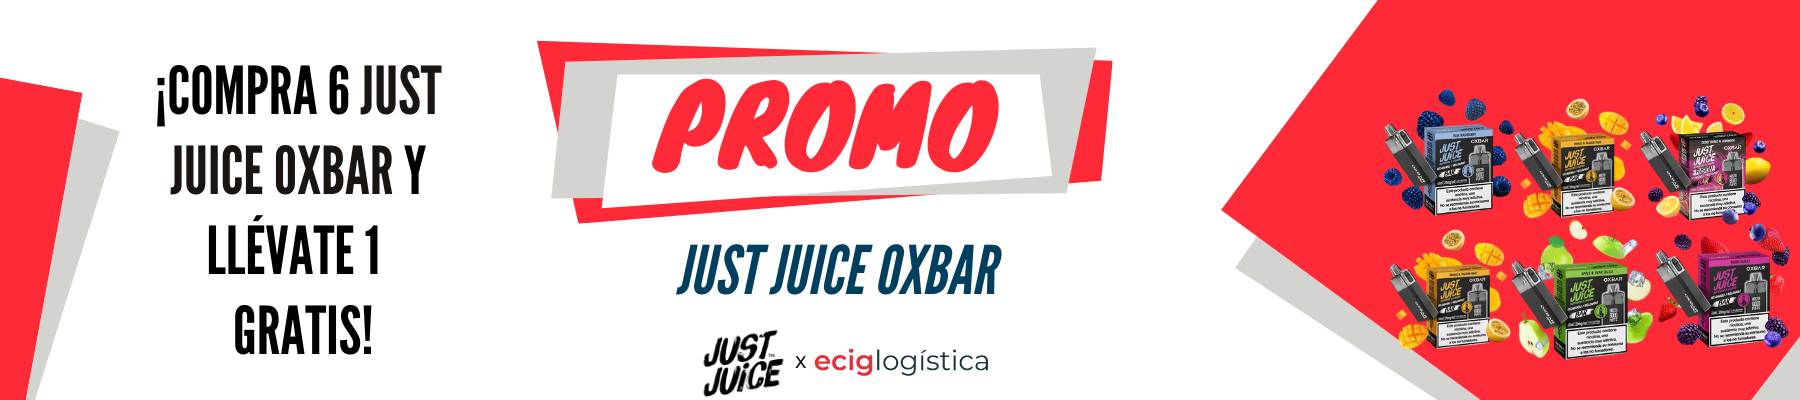 Compra 6 Just Juice Oxbar y llévate 1